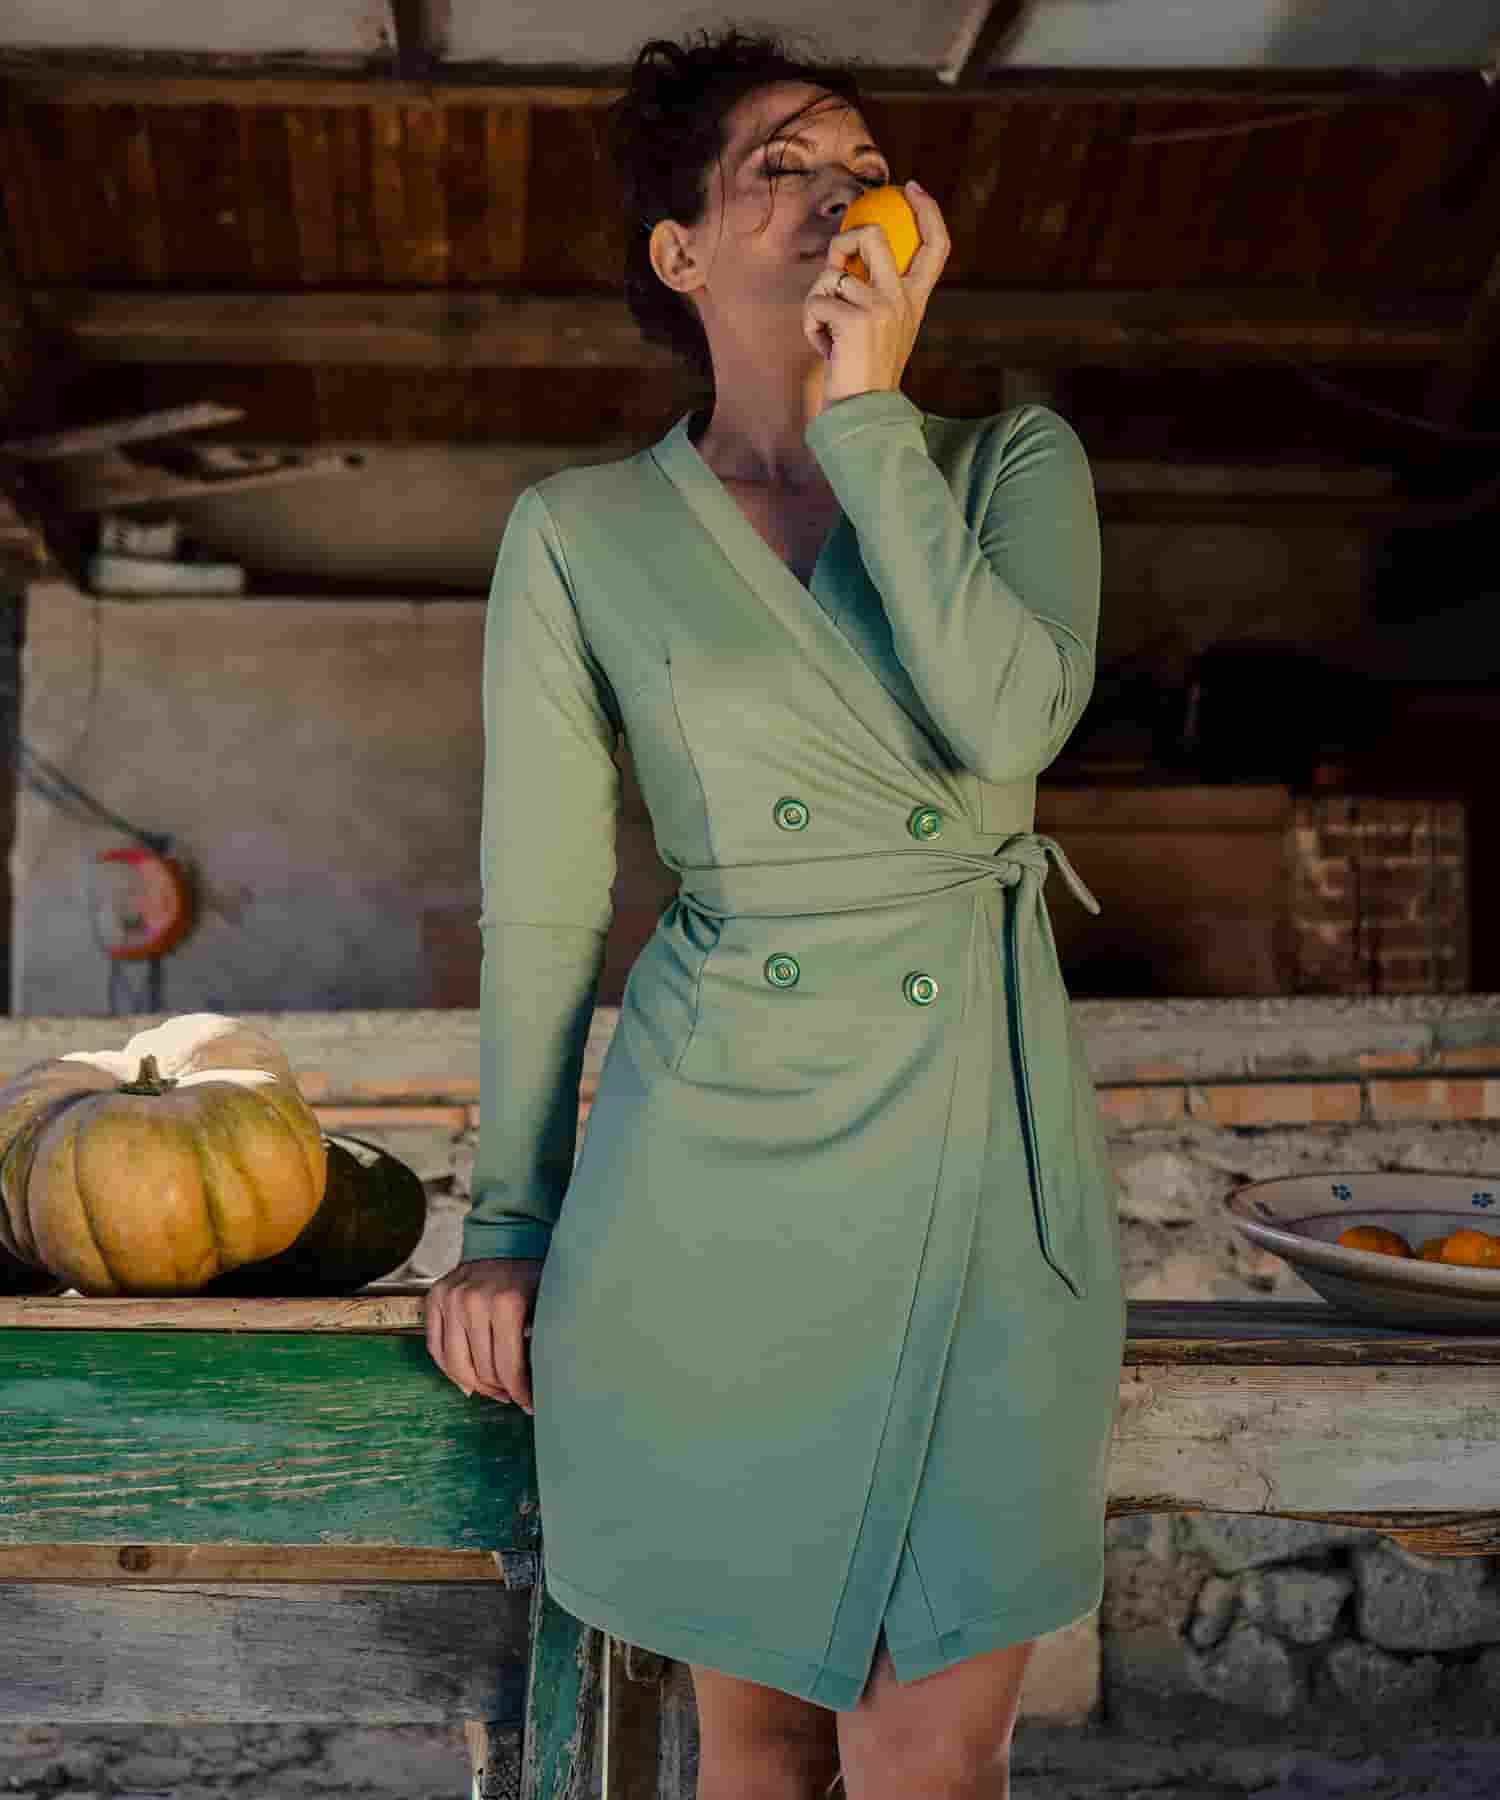 Abito giacca Vittoria cotone biologico Flavia Amato malia lab atelier moda abbigliamento sostenibile artigianale